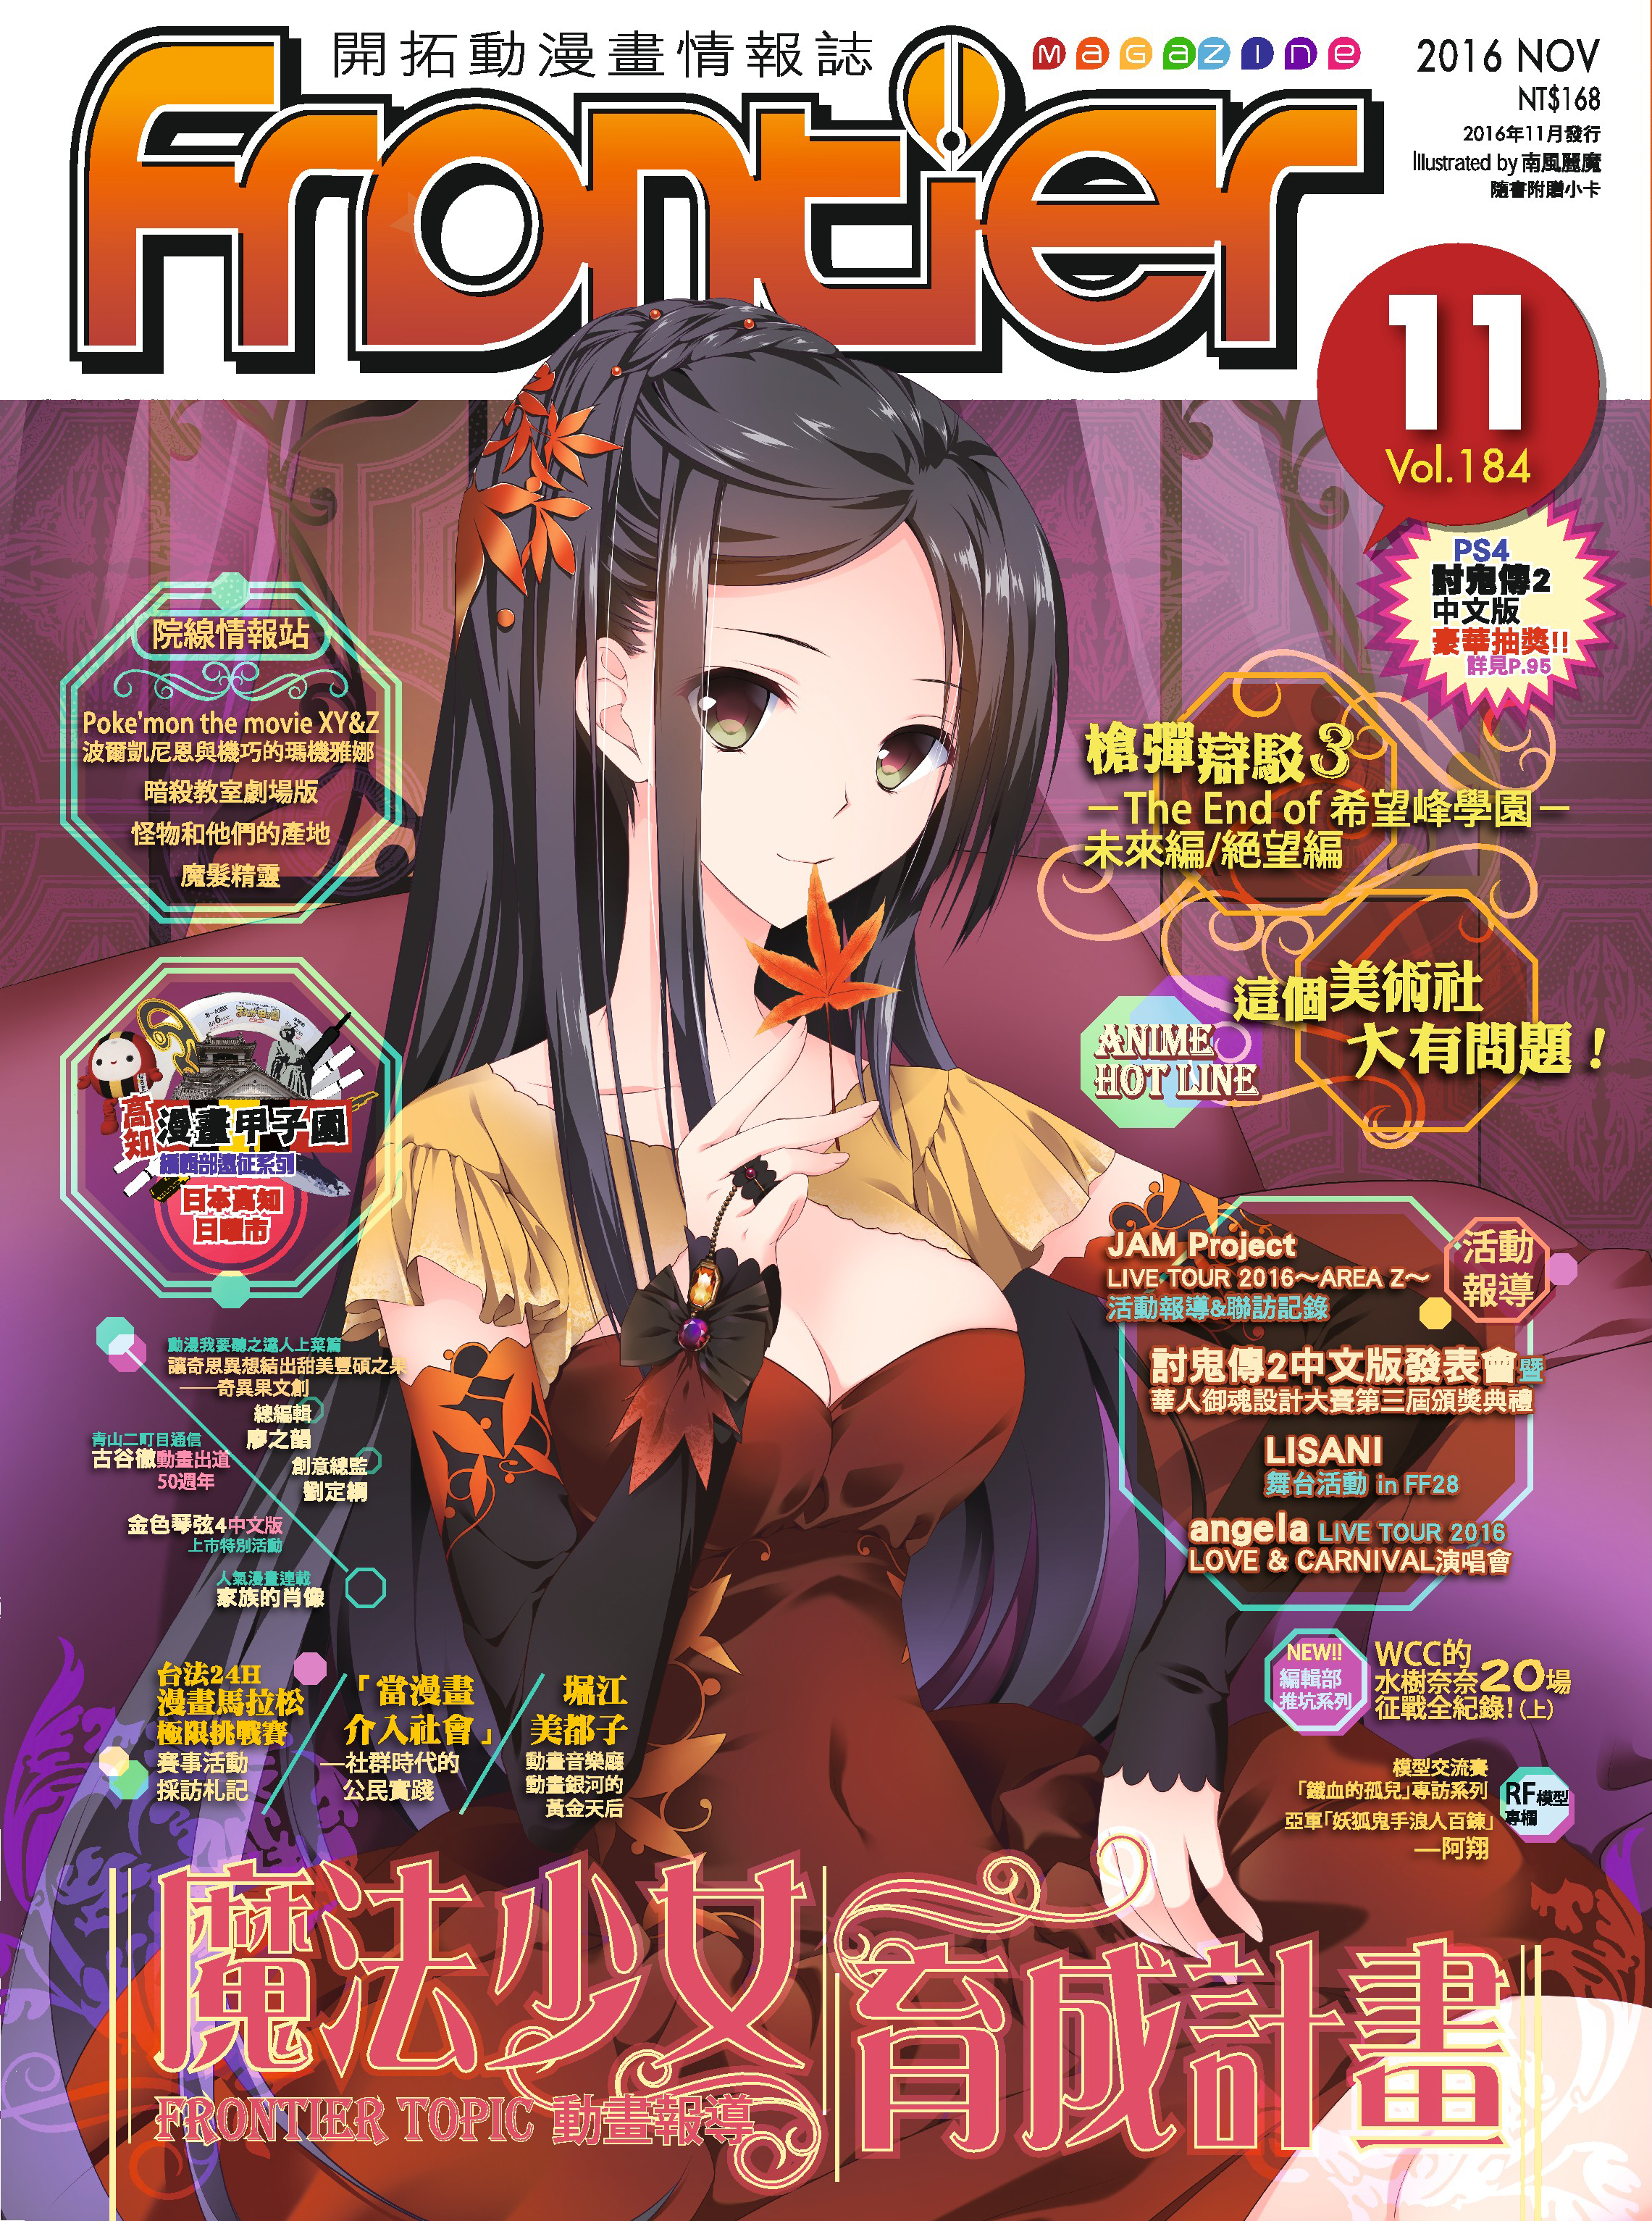 nov2016 magazine cover